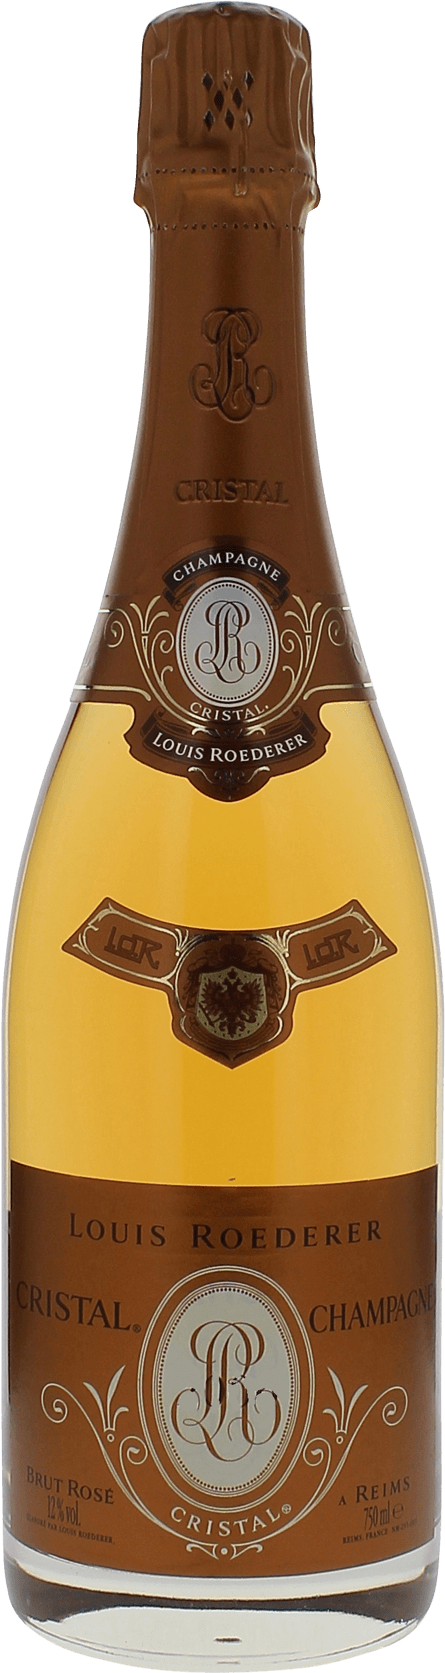 Cristal roederer ros 2000  Roederer, Champagne